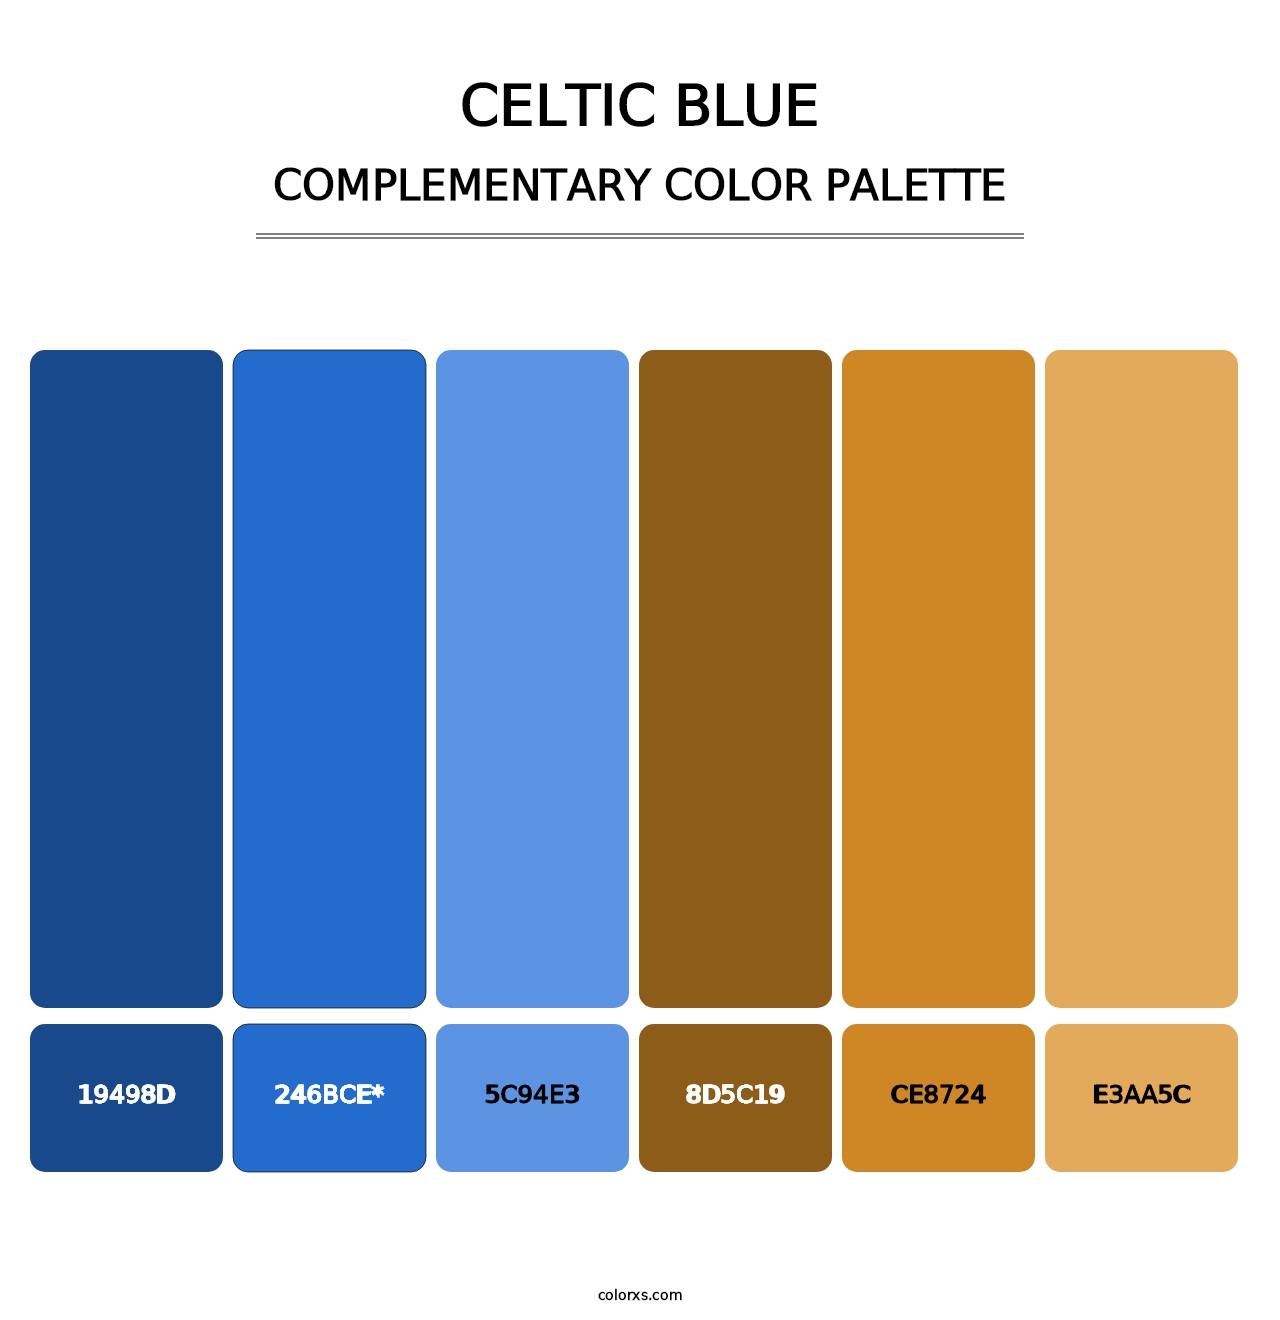 Celtic Blue - Complementary Color Palette